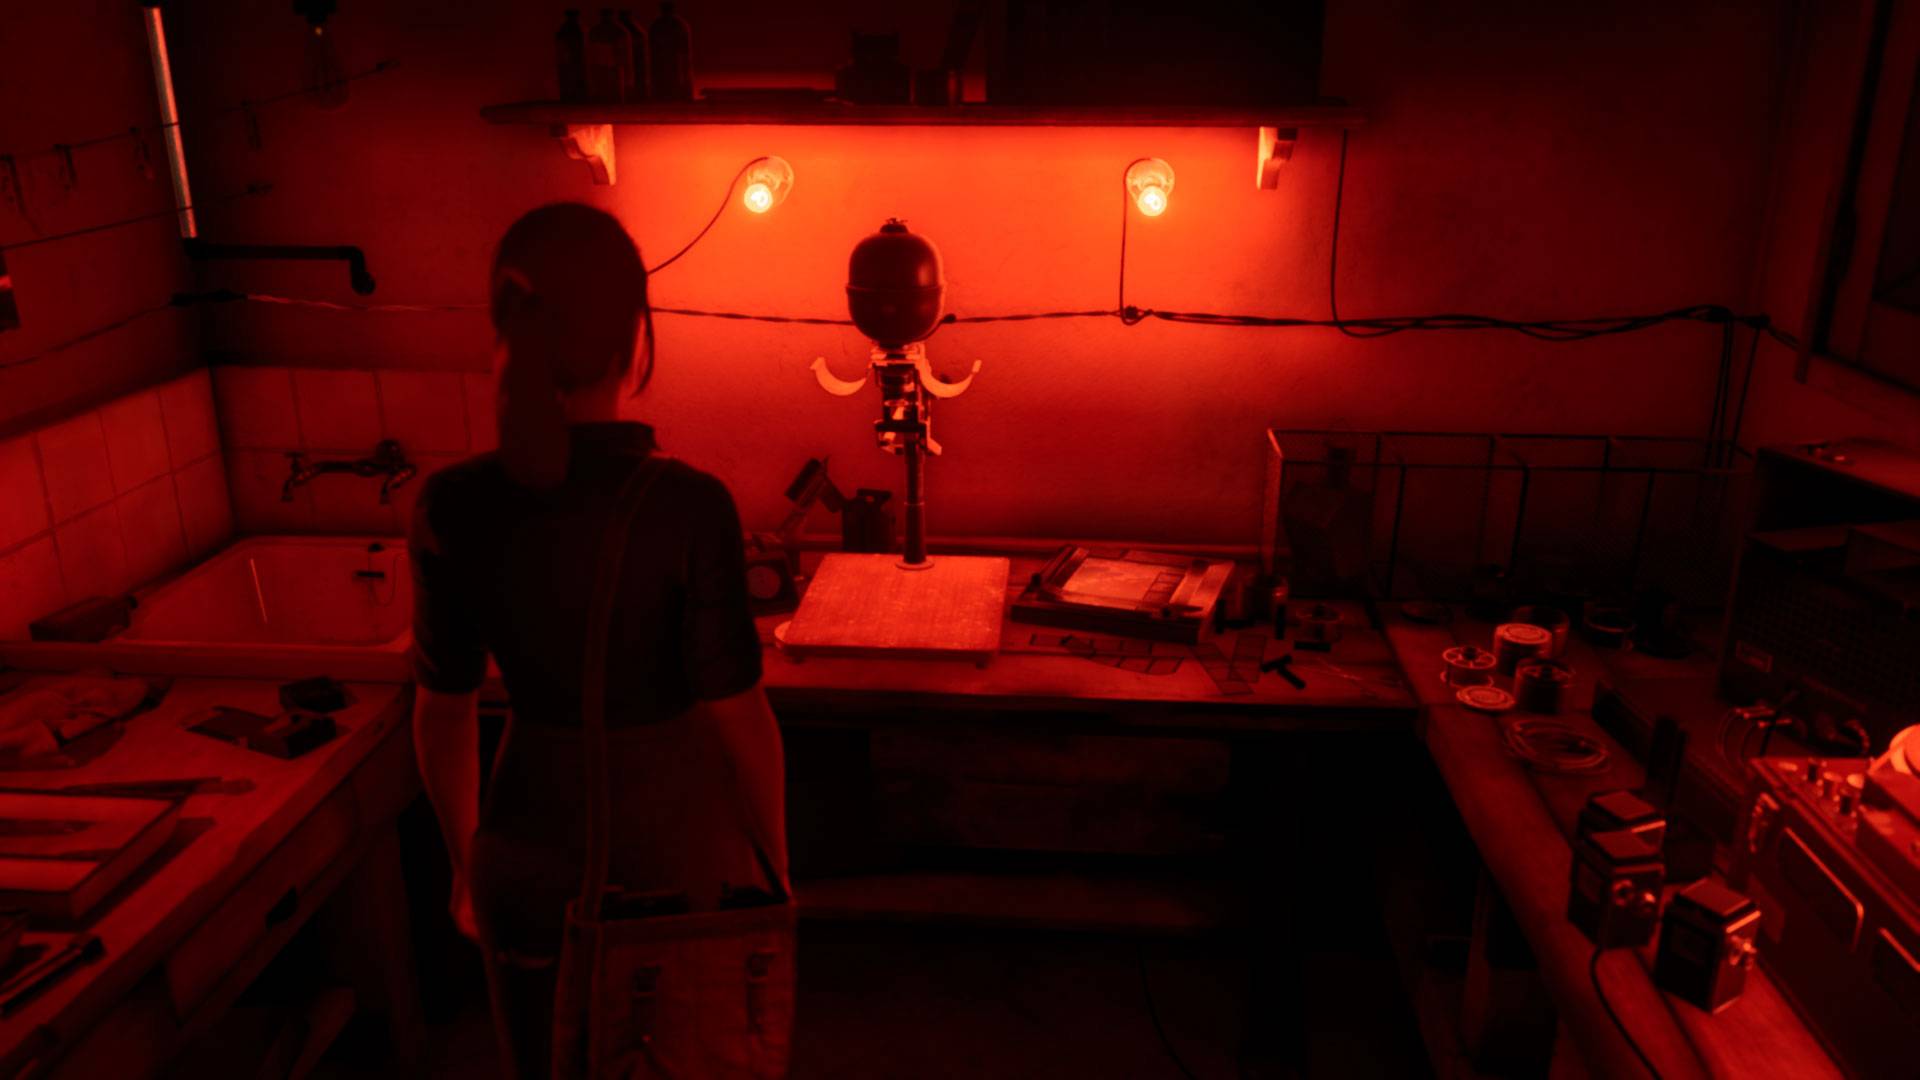 Saçları arkadan bağlı genç bir kadın, önünde kırmızı ışıklı eski ekipmanların bulunduğu bir fotoğraf odasında duruyor.